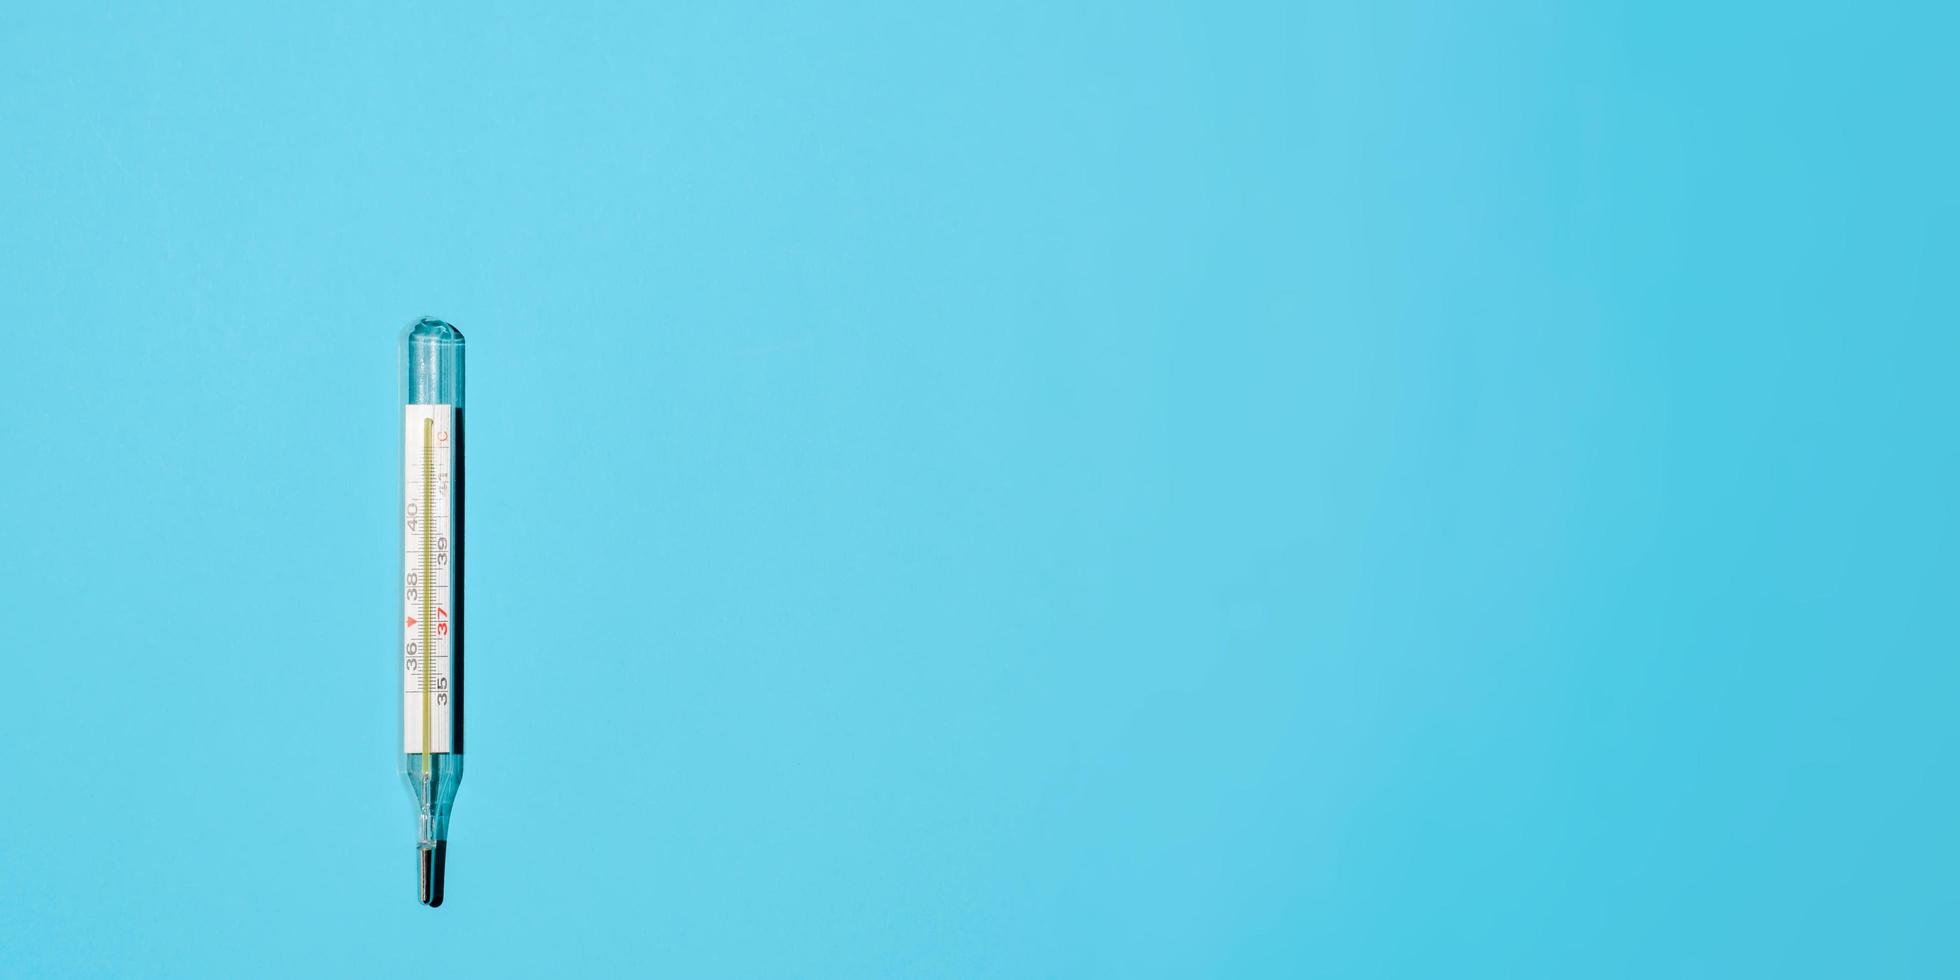 termómetro celsius clásico sobre un fondo azul claro, plano. banner, espacio para texto a la derecha. foto médica minimalista